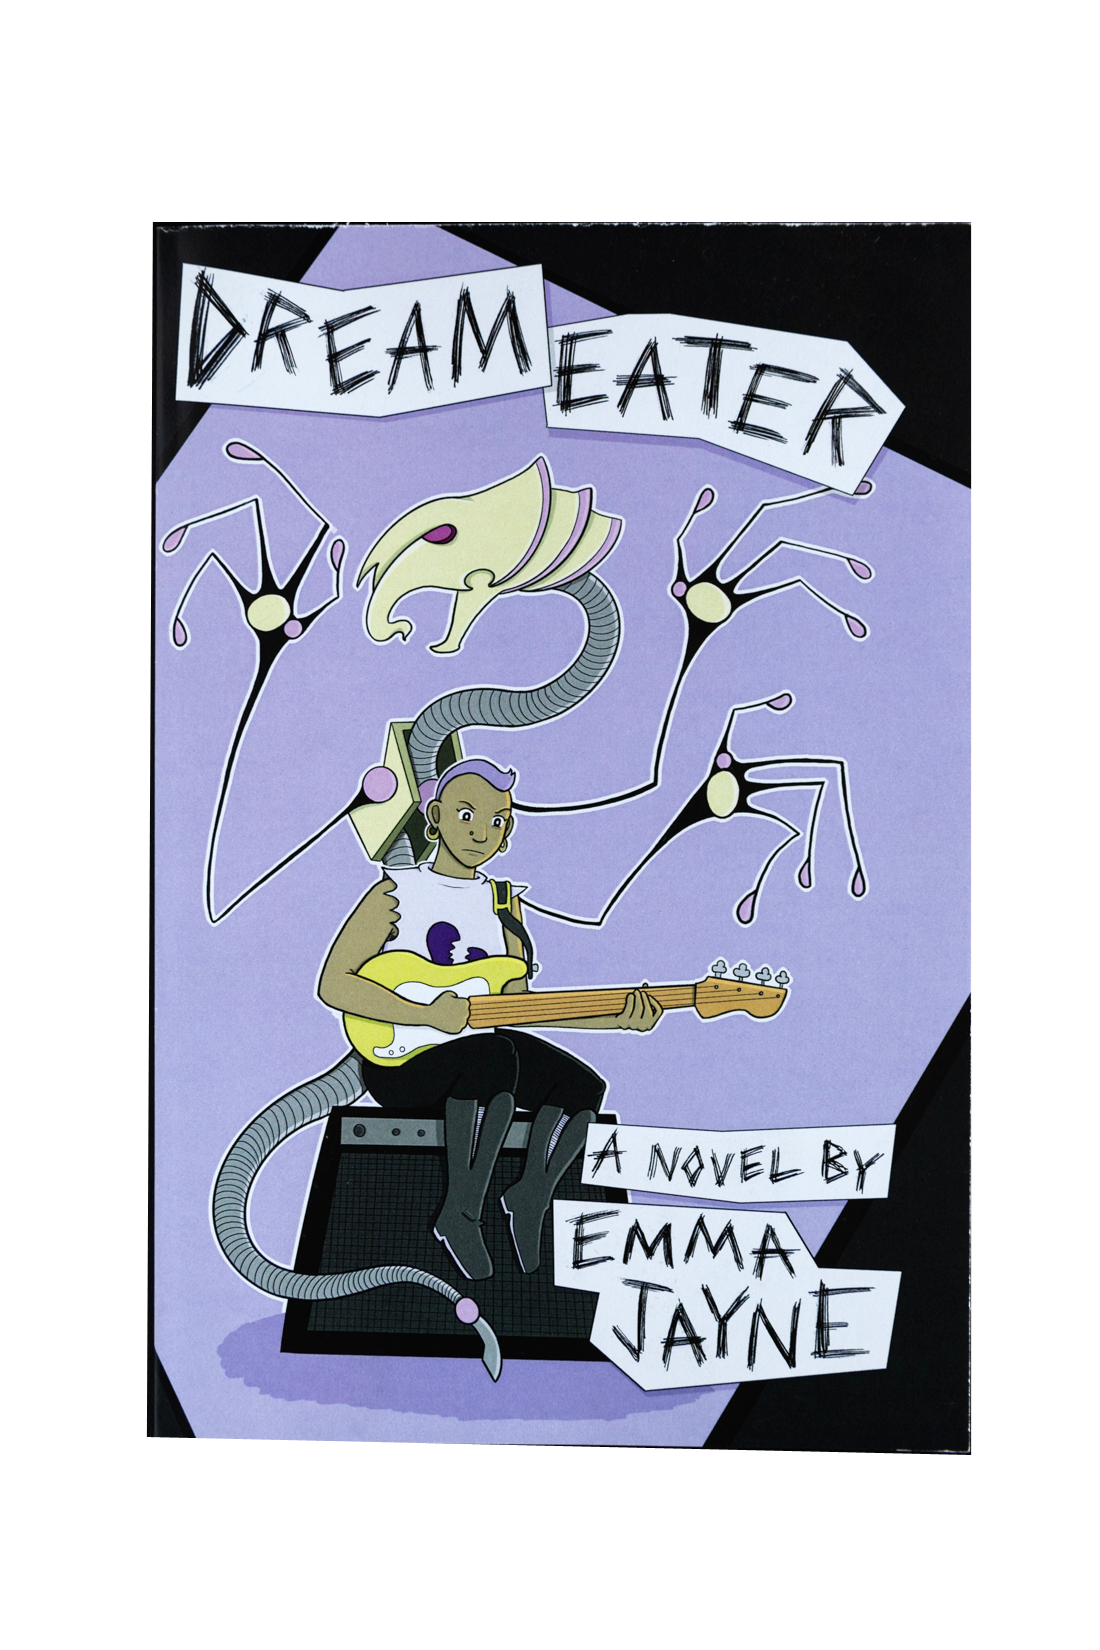 Dreameater by Emma Jayne